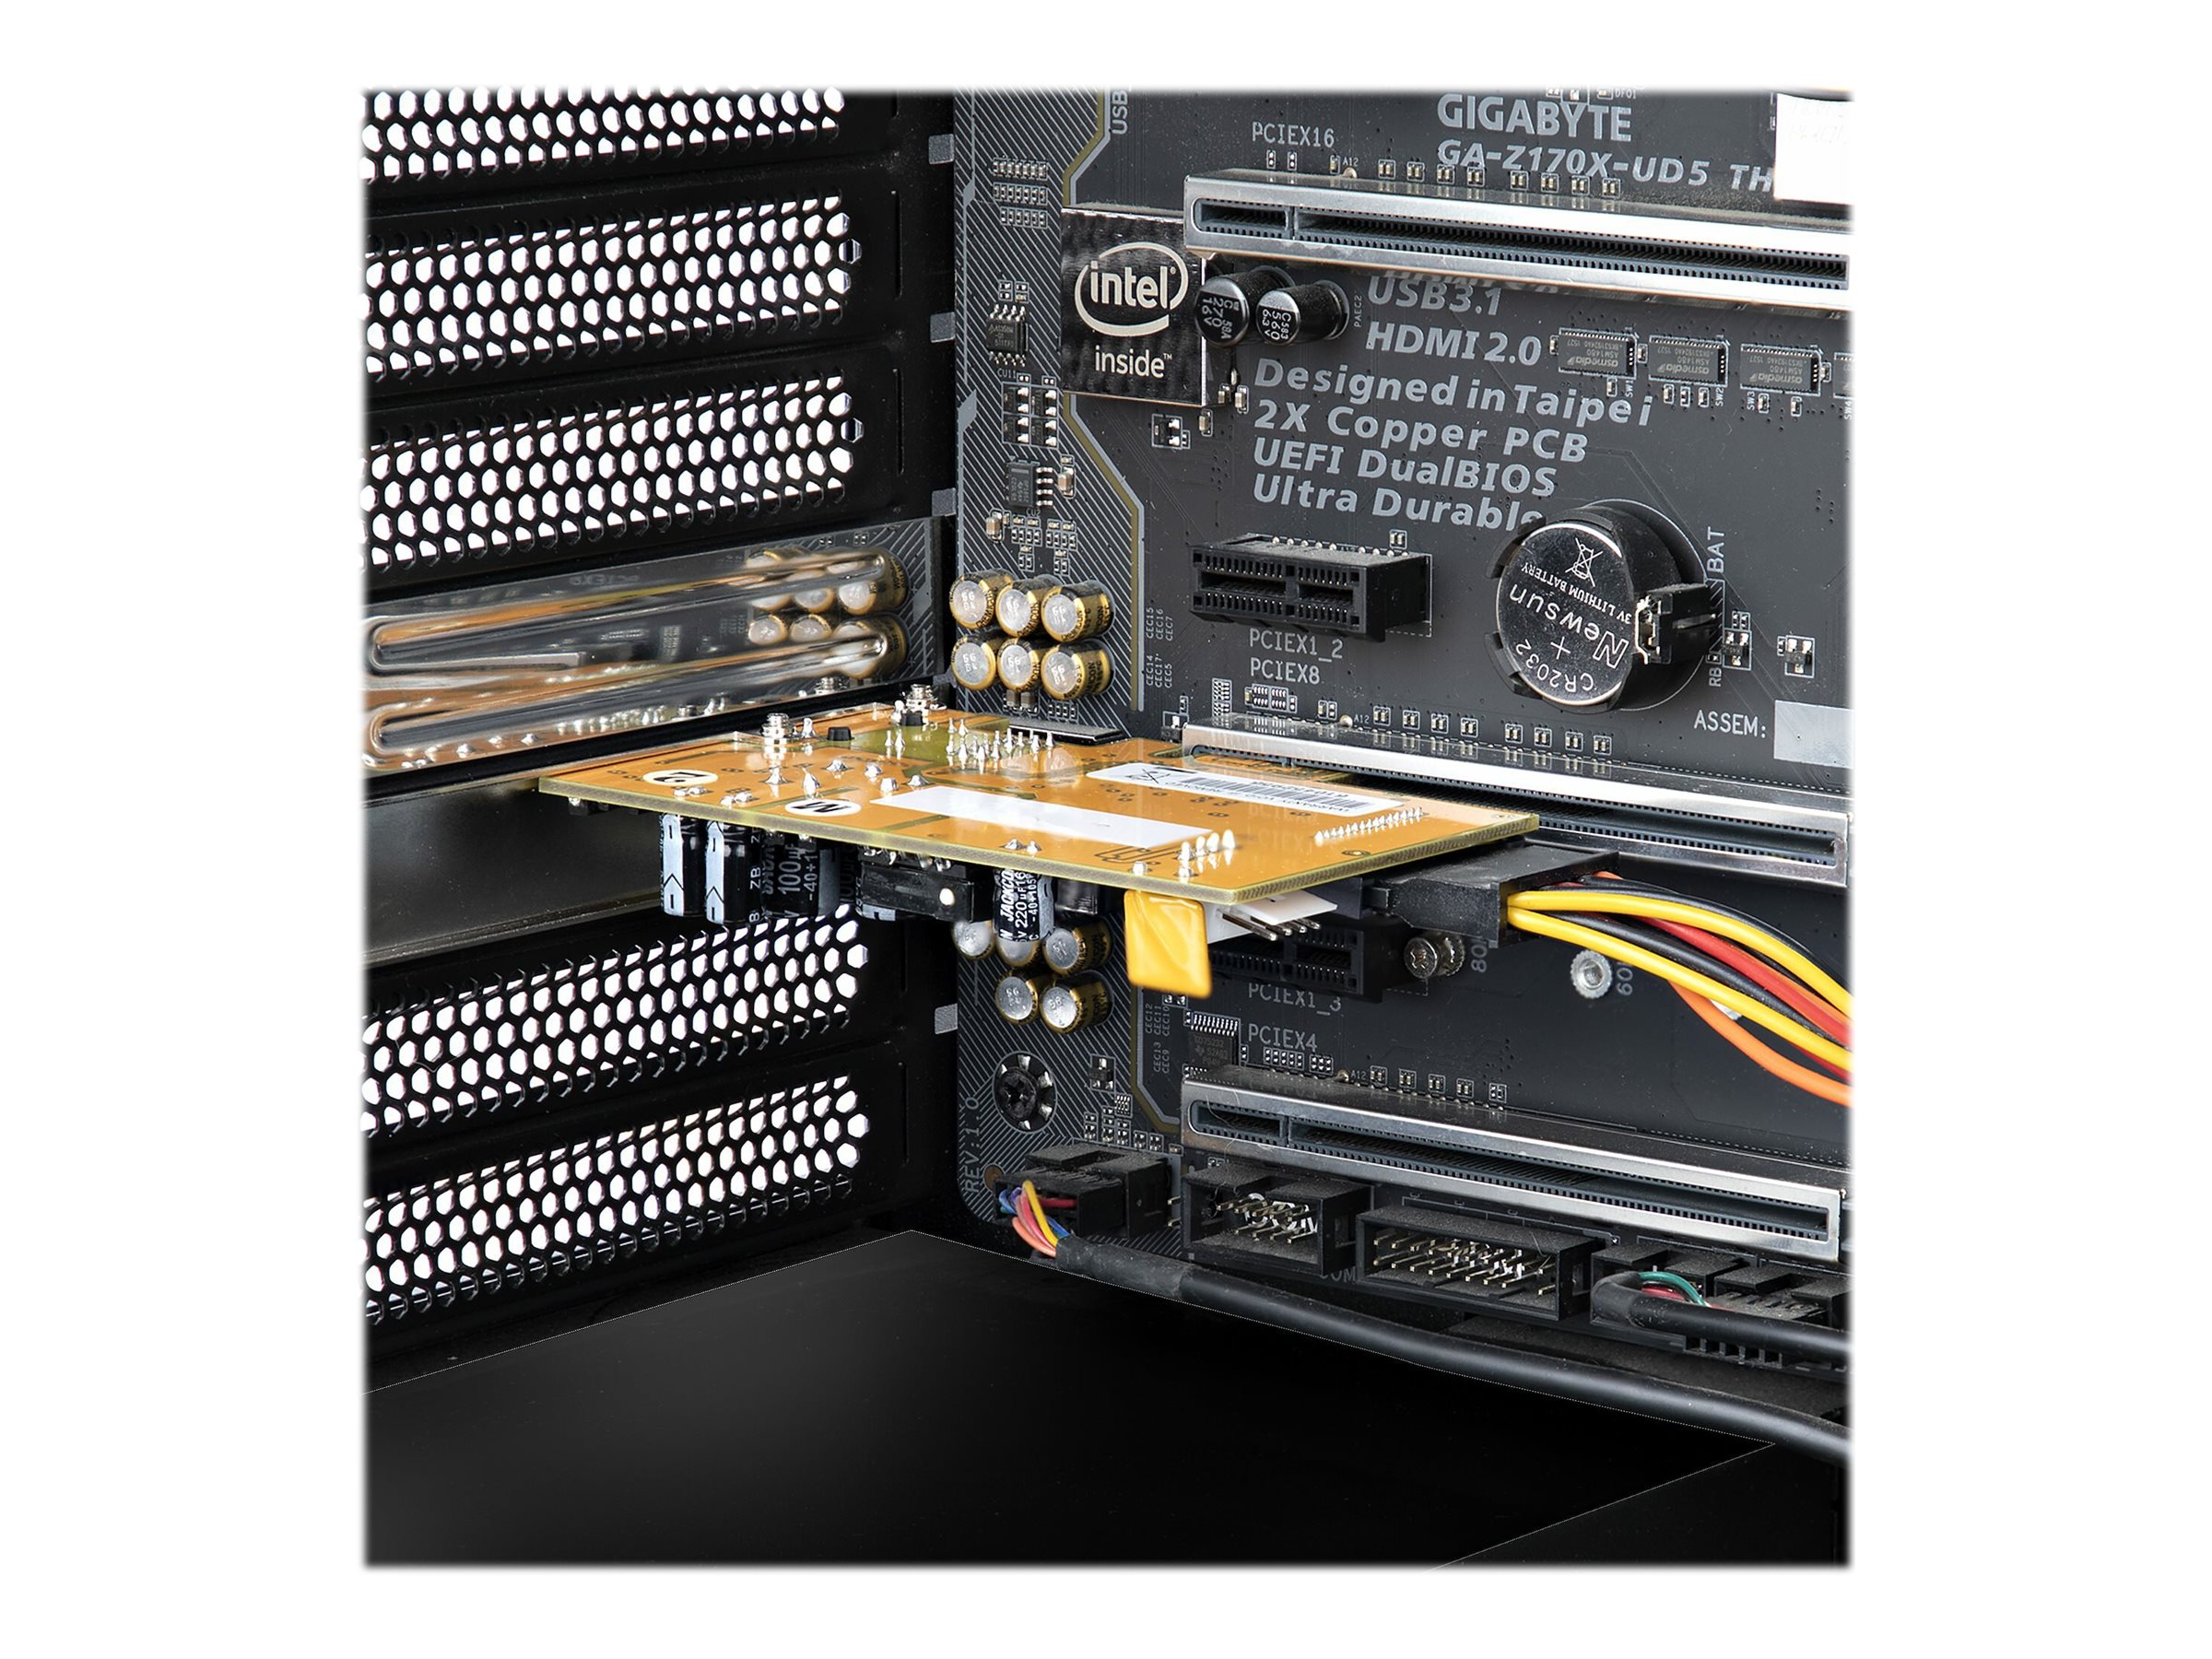 StarTech.com 1 Port 2.5Gbps PoE Network Card, PCIe Ethernet Card w/RJ45 Port, 30W 802.3at PoE NIC for Desktops/Servers, Network PoE LAN Adapter w/Low-Profile Bracket Included - NBASE-T, Windows/Linux Support (ST1000PEXPSE) - Adaptateur réseau - PCIe 2.1 profil bas - 2.5GBase-T (PoE+) x 1 - ST1000PEXPSE - Cartes réseau